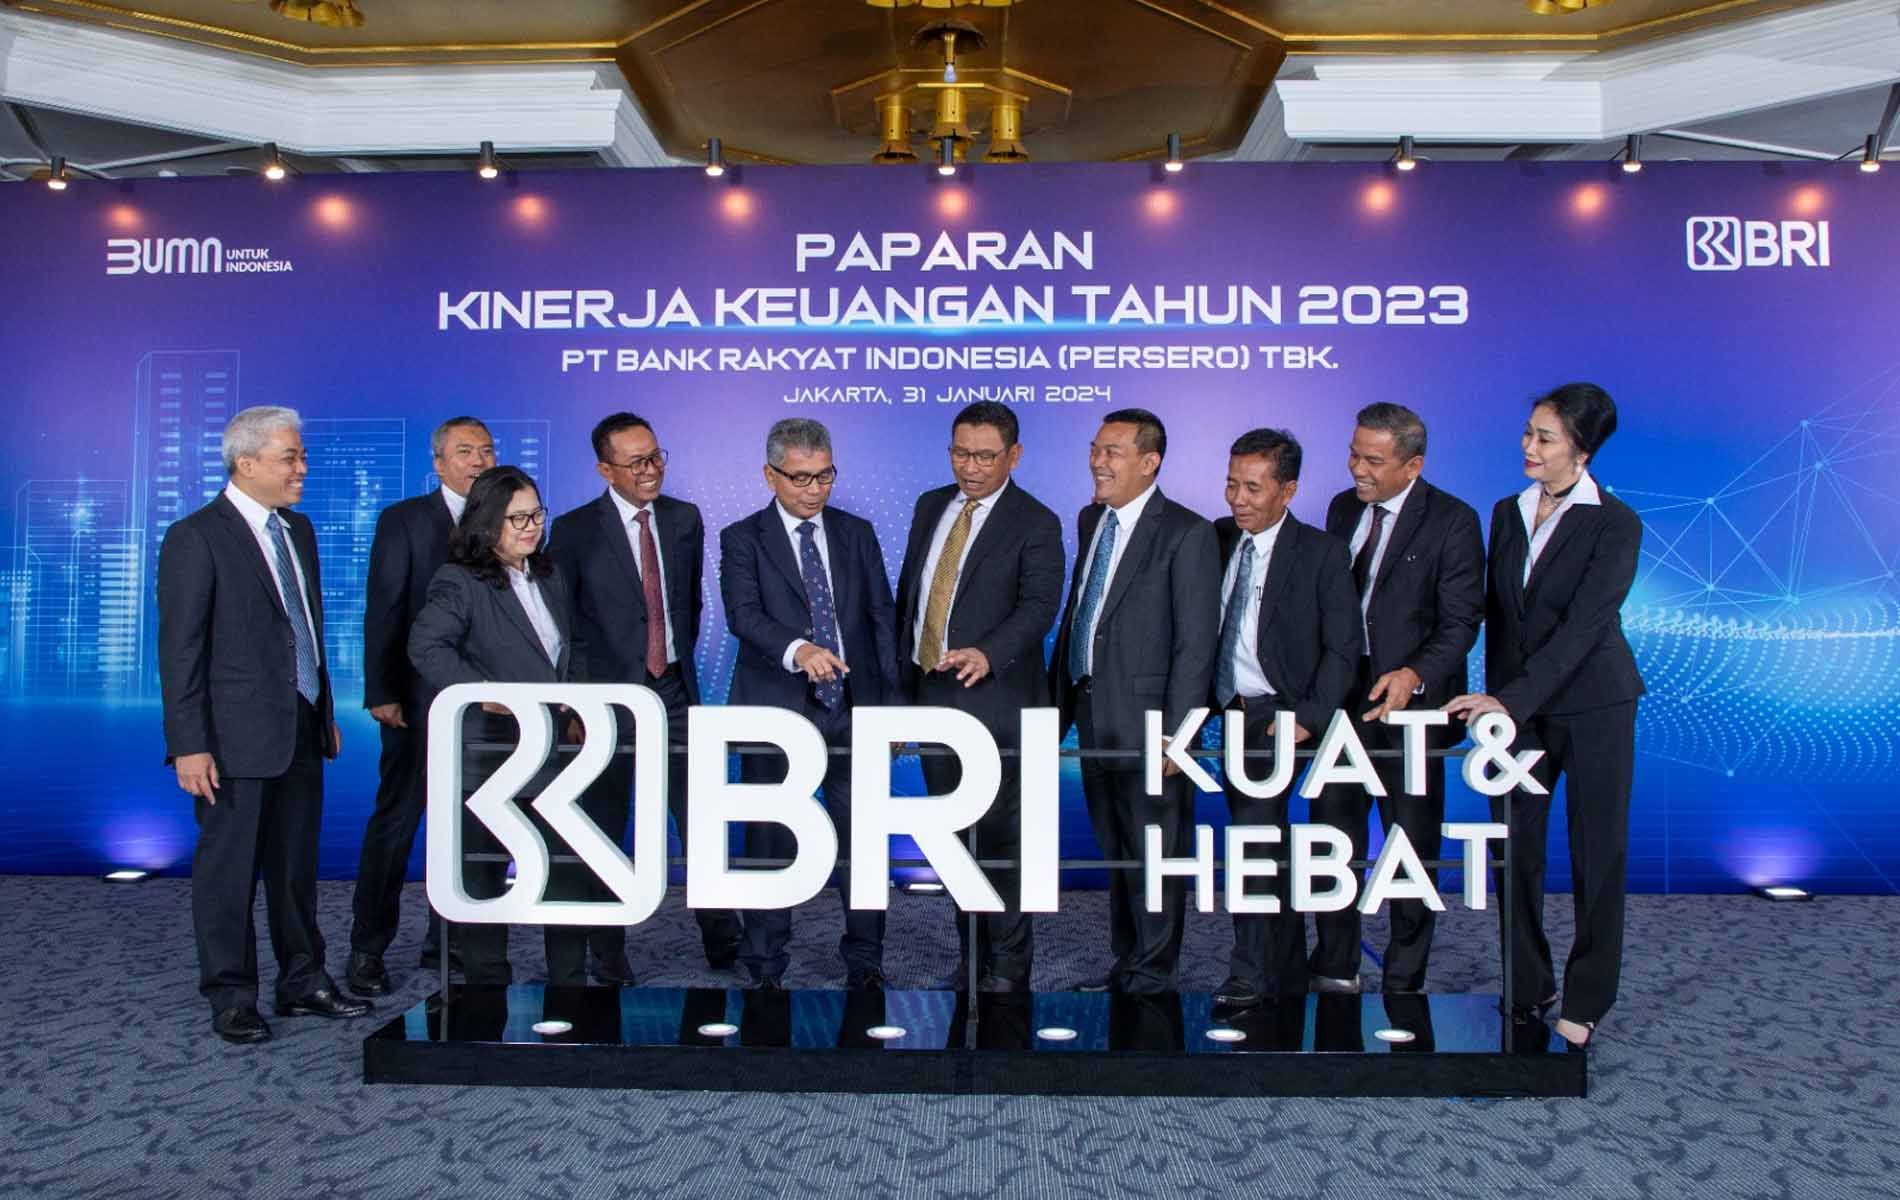 Jajaran Direksi BRI pada Kegiatan Pemaparan Kinerja Keuangan Tahun 2023 di Jakarta